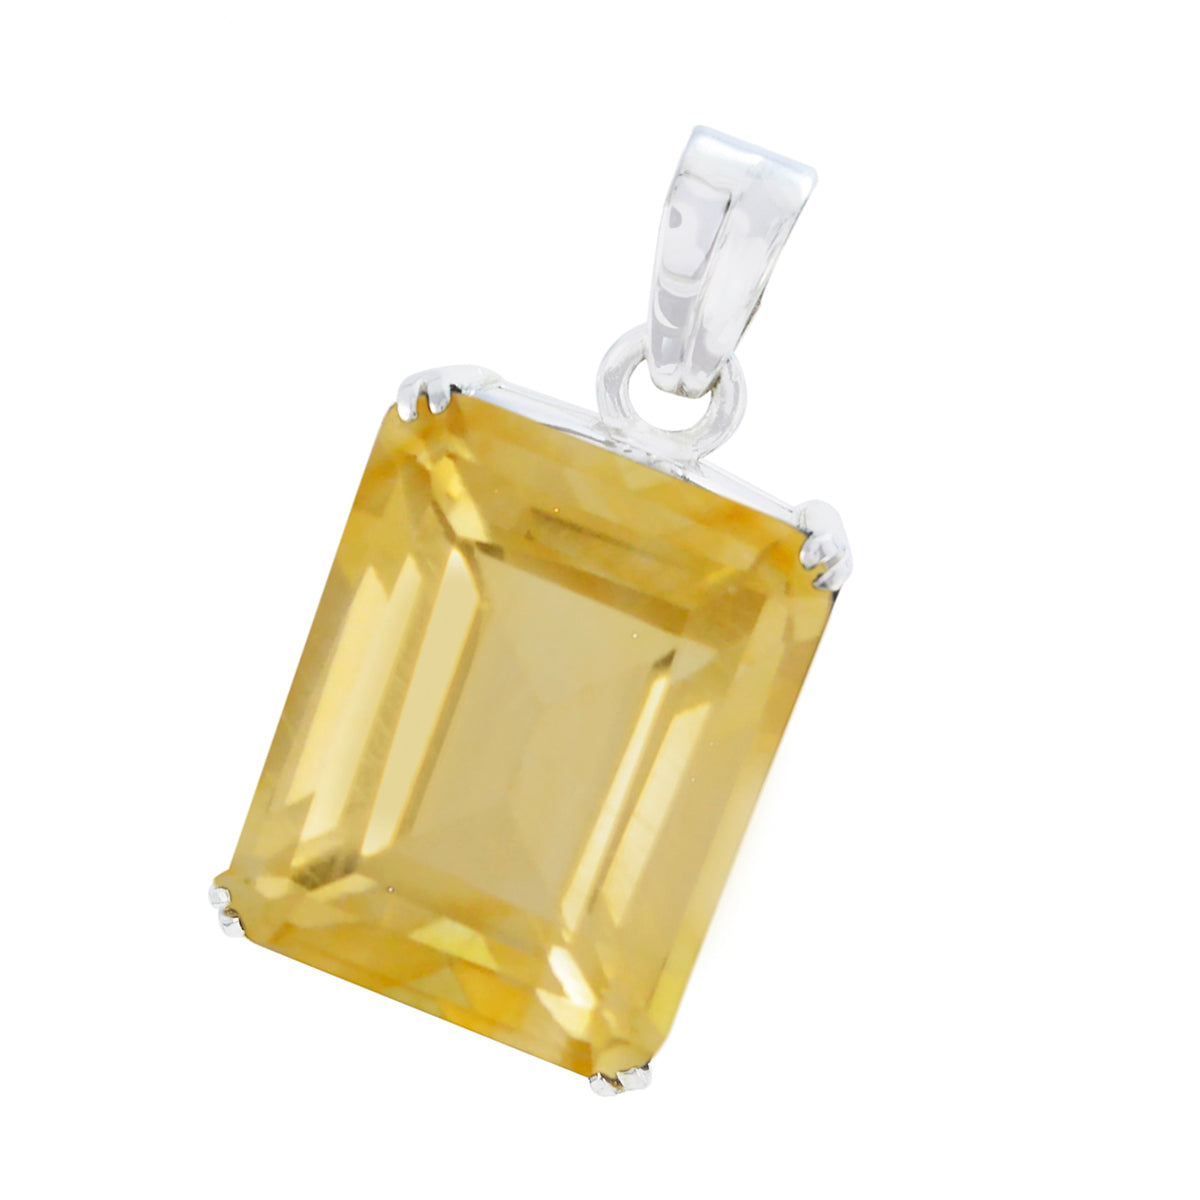 riyo attraente ciondolo con gemme ottagonali sfaccettate in argento massiccio con citrino giallo, regalo per anniversario